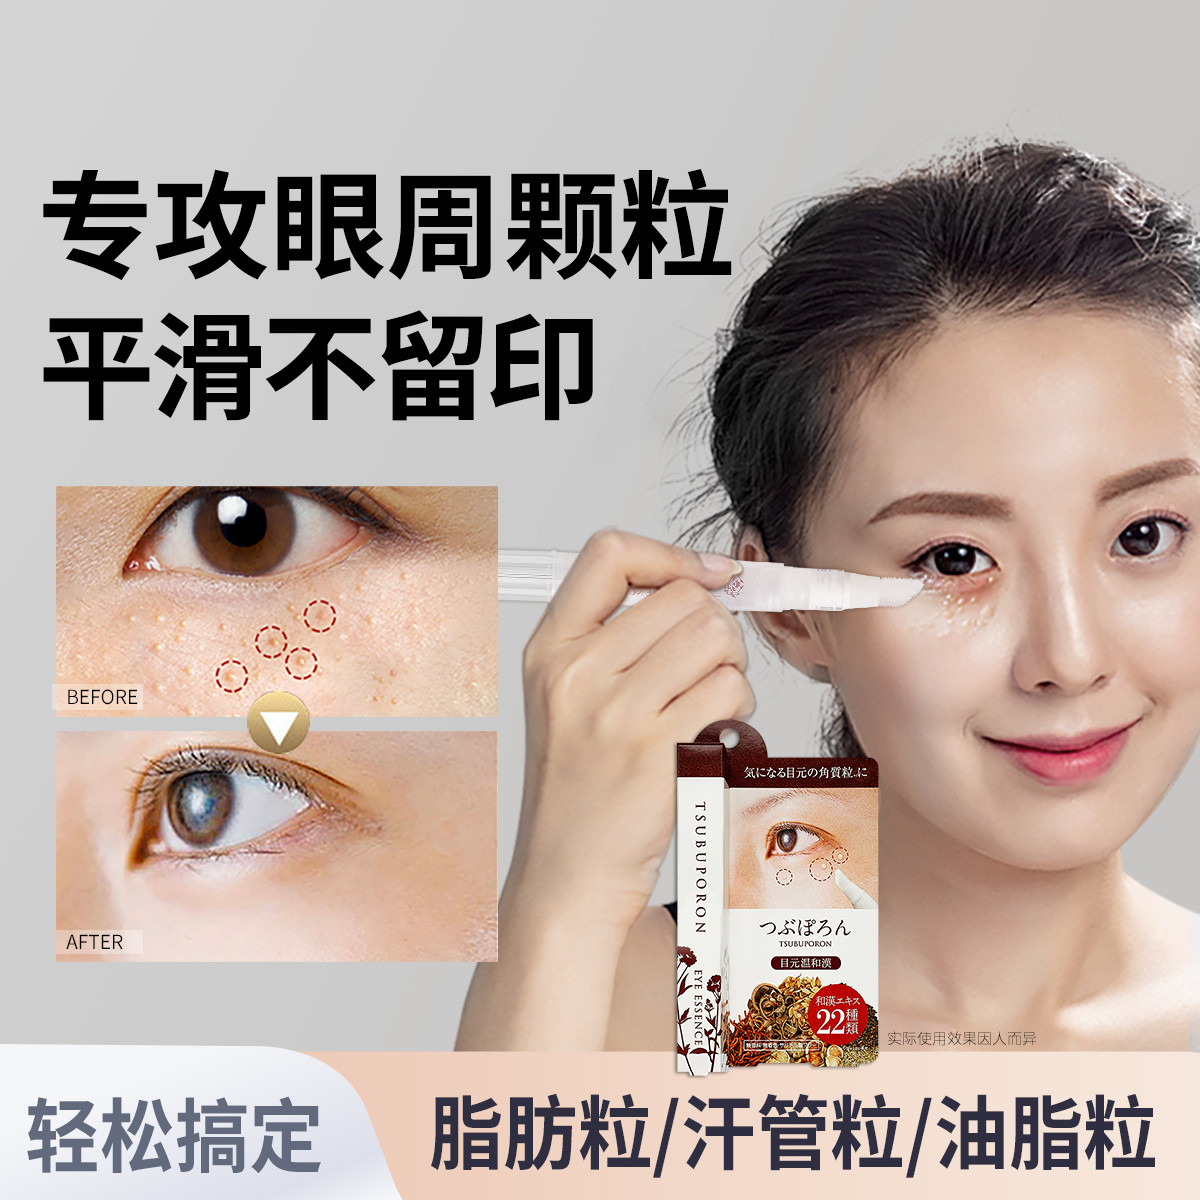 SLINKYTOUCH 日本美人姬去除脂肪粒汗管瘤神器脸部眼周去油脂粒专用眼霜精华液